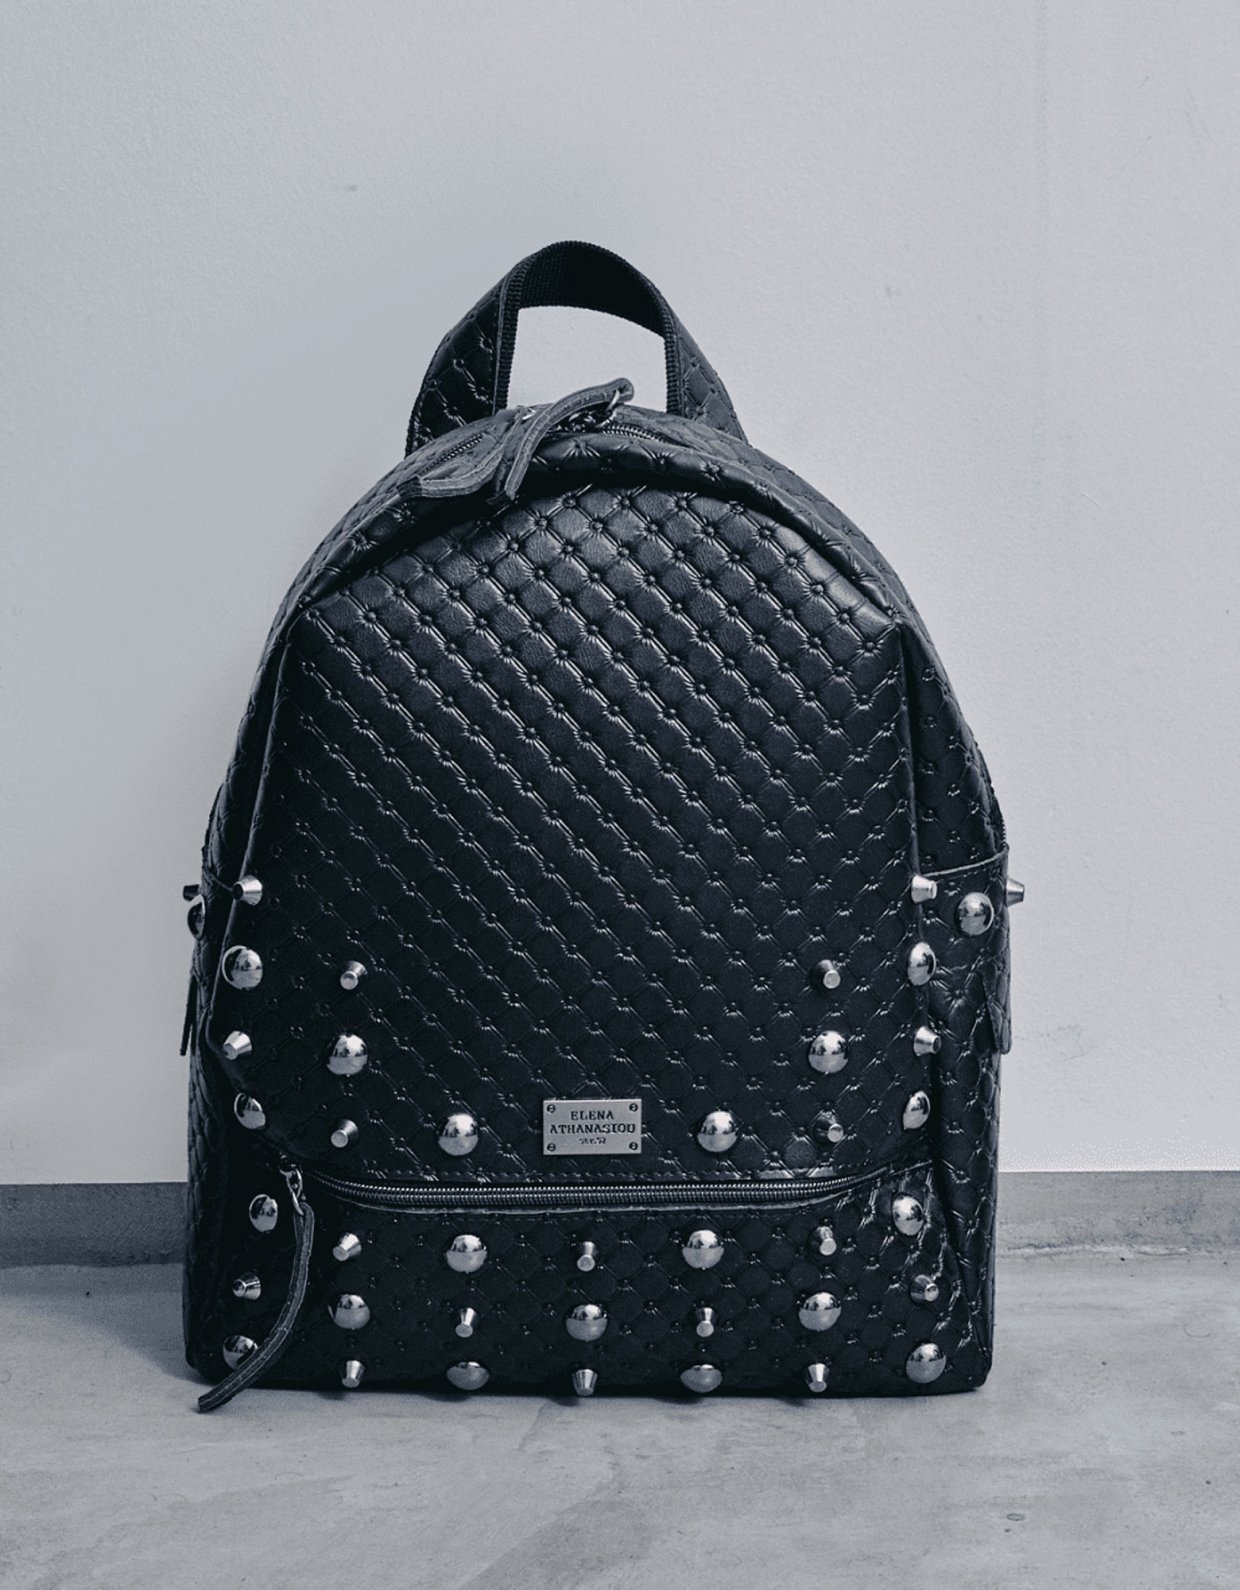 Elena Athanasiou Retro backpack large black